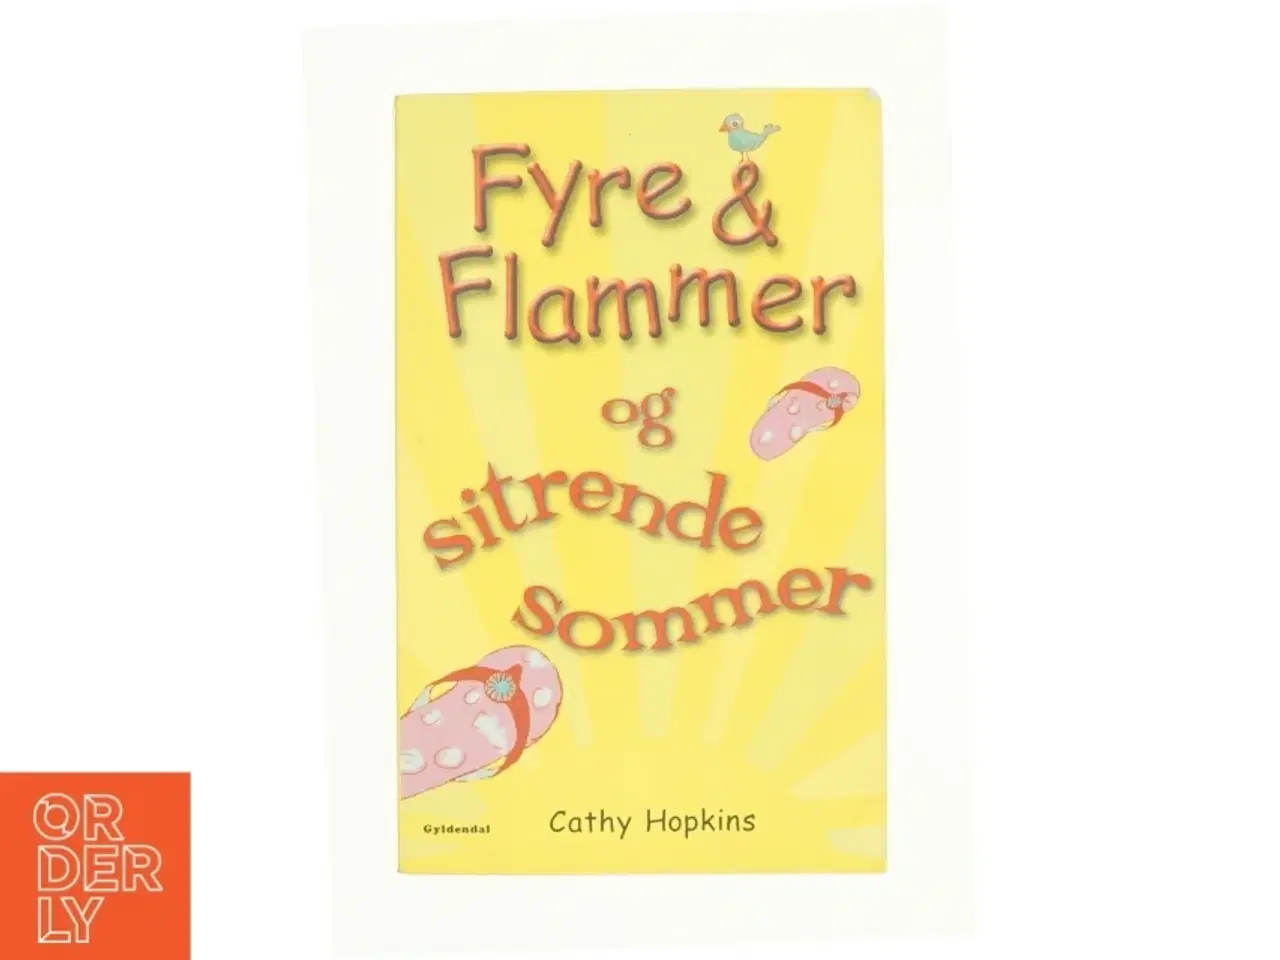 Billede 1 - Fyre & flammer og sitrende sommer af Cathy Hopkins (Bog)